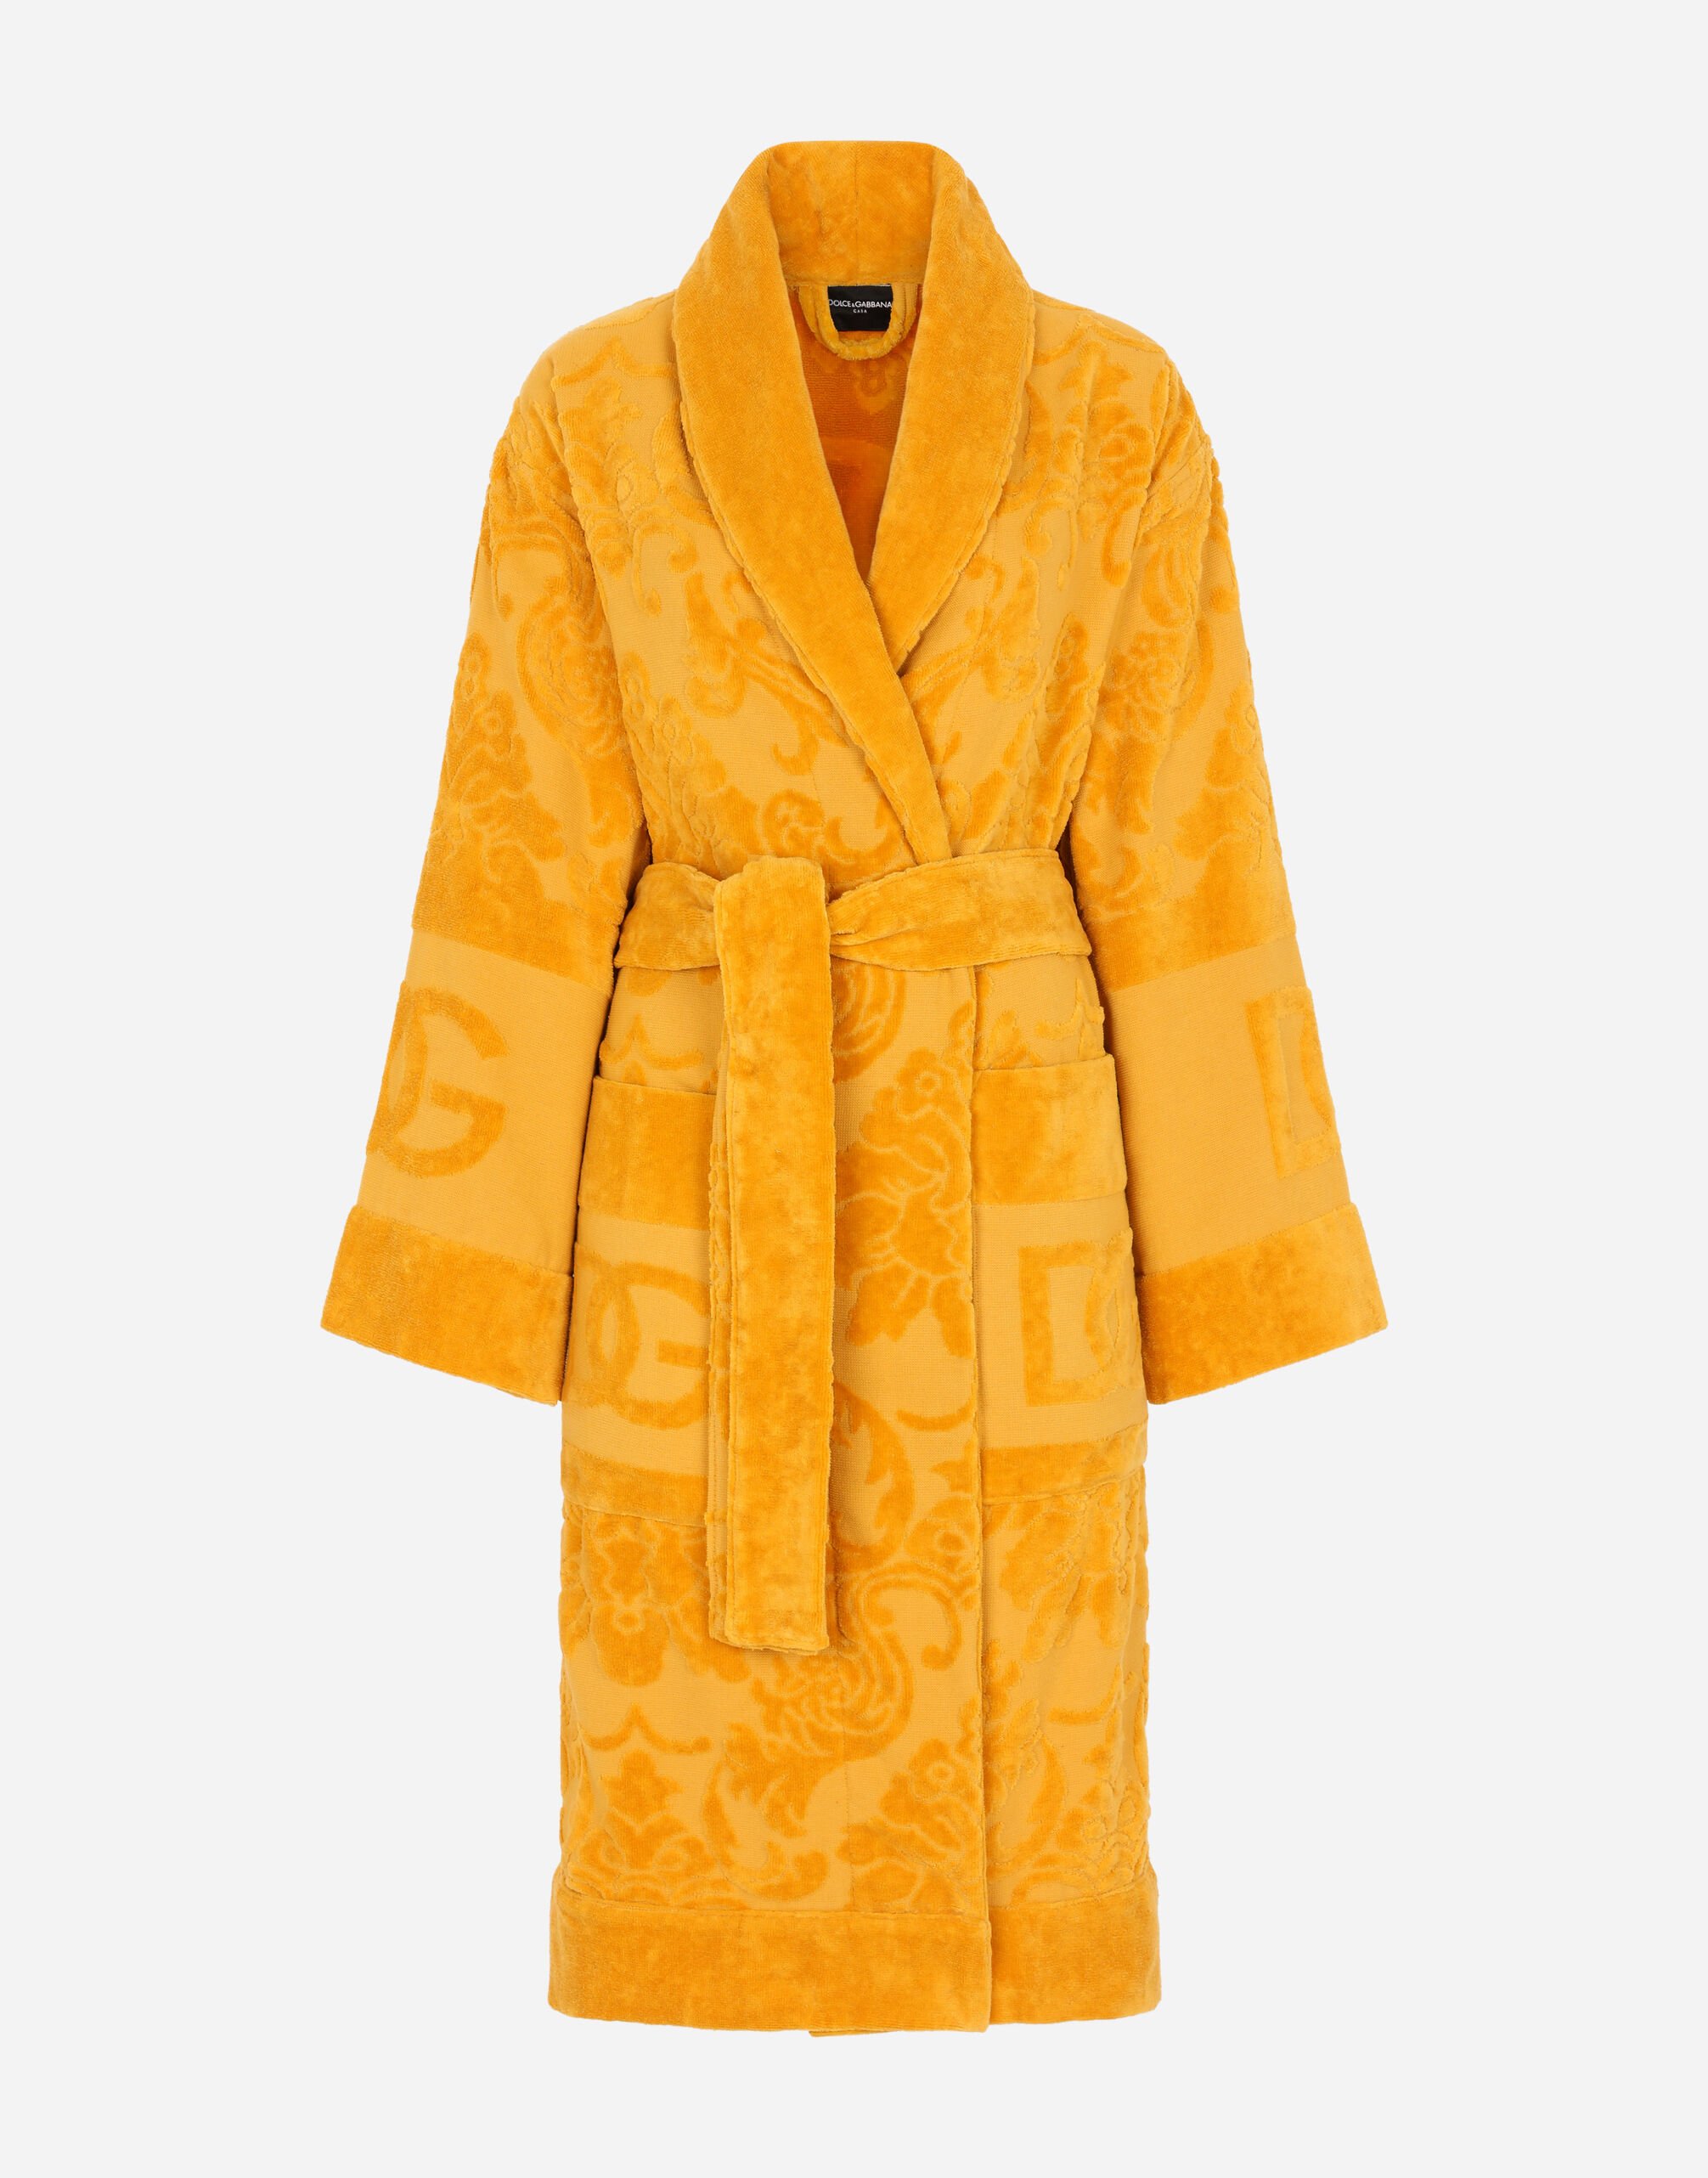 Dolce & Gabbana Bath Robe in Terry Cotton Jacquard Multicolor TCF019TCAGB